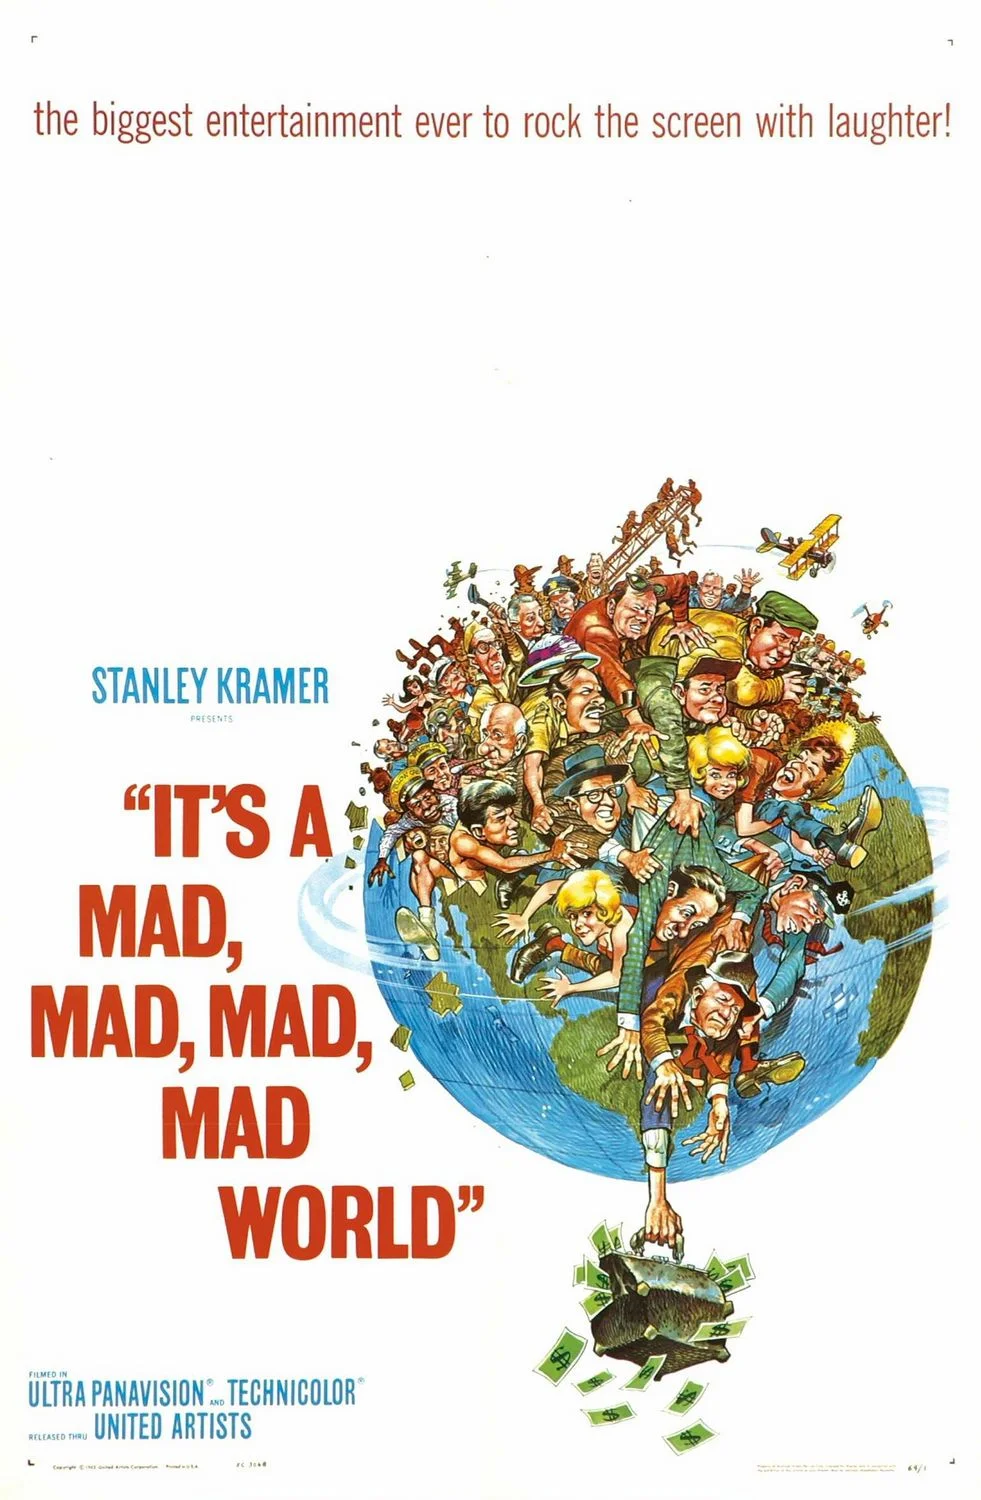 ดูหนังออนไลน์ฟรี It s a Mad Mad Mad Mad World (1963) โลกบ้าบ้าบอบอ